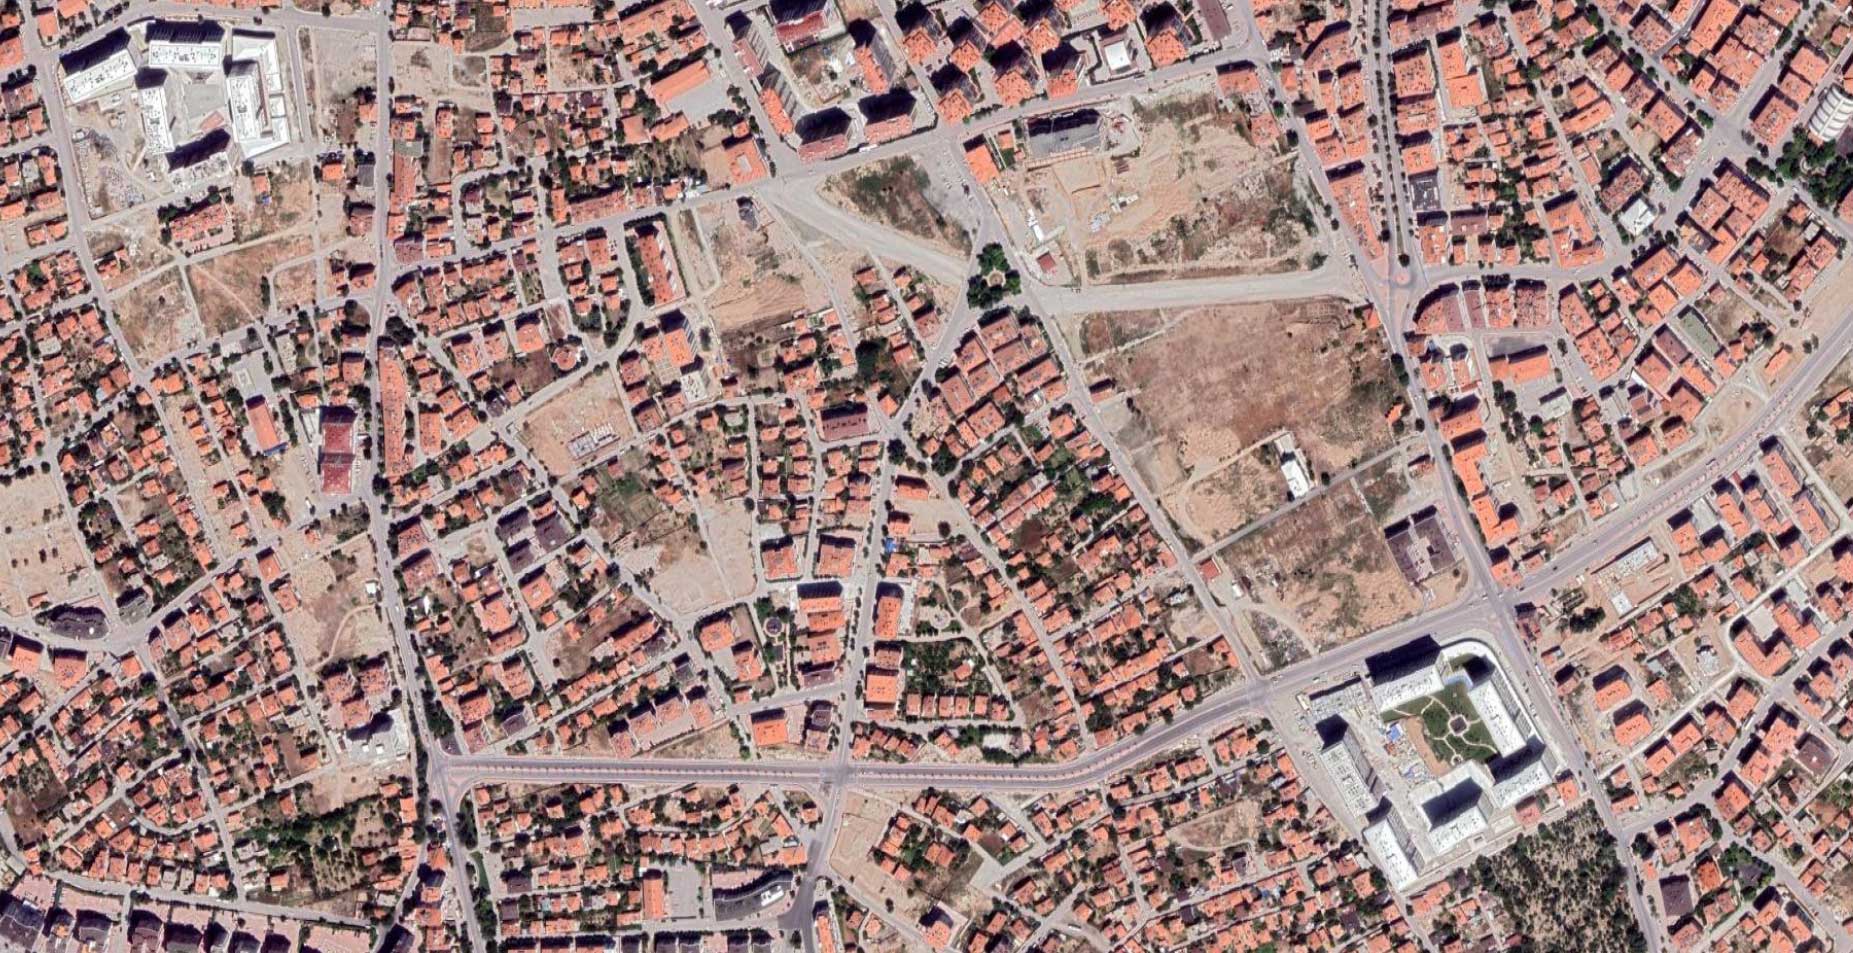 Türkiye İstatistik Kurumu Konya'nın konutlarıyla ilgili yeni bilgilerin bulunduğu istatistikleri paylaştı. Buna göre Konya'da yaşayan nüfusun yüzde 47,8'i 2001 yılı öncesinde yapımı tamamlanan binalarda yaşıyor.